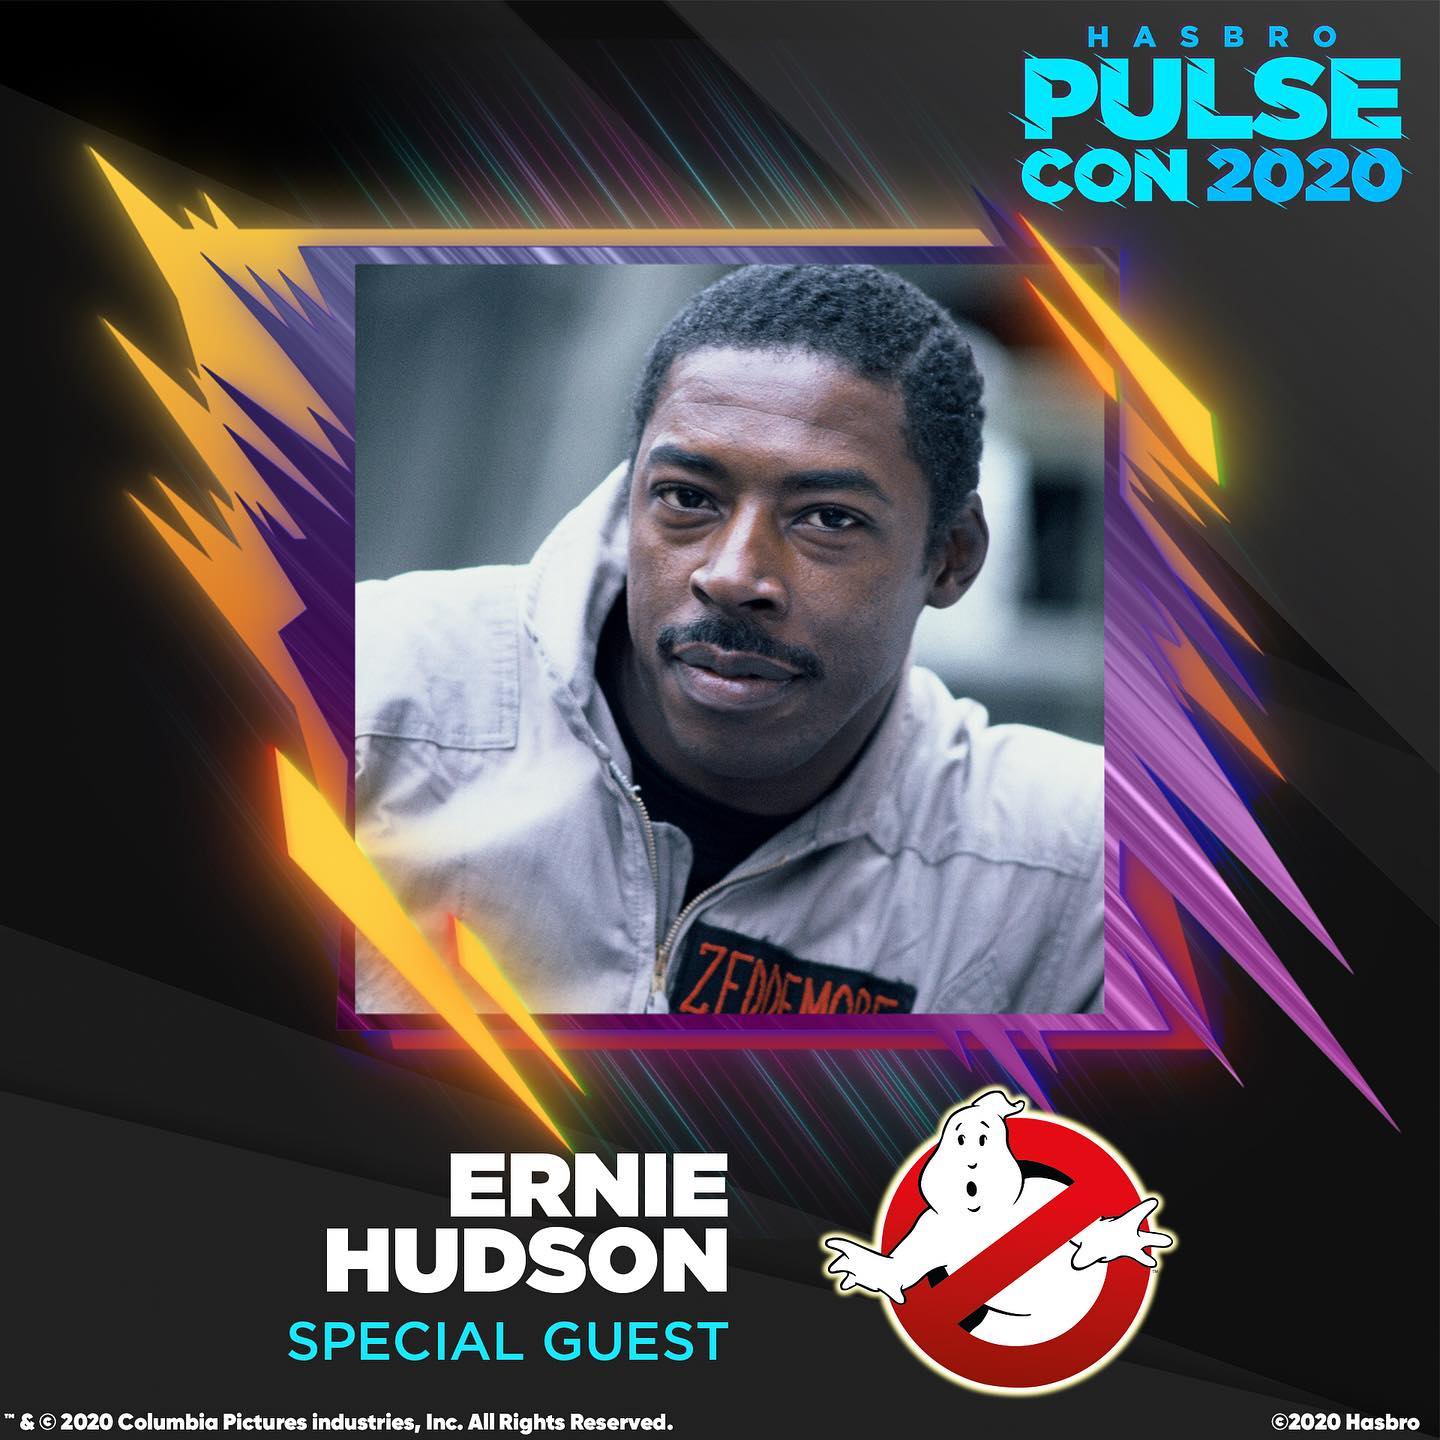 Ernie Hudson ospite speciale al Hasbro Pluse Con 2020